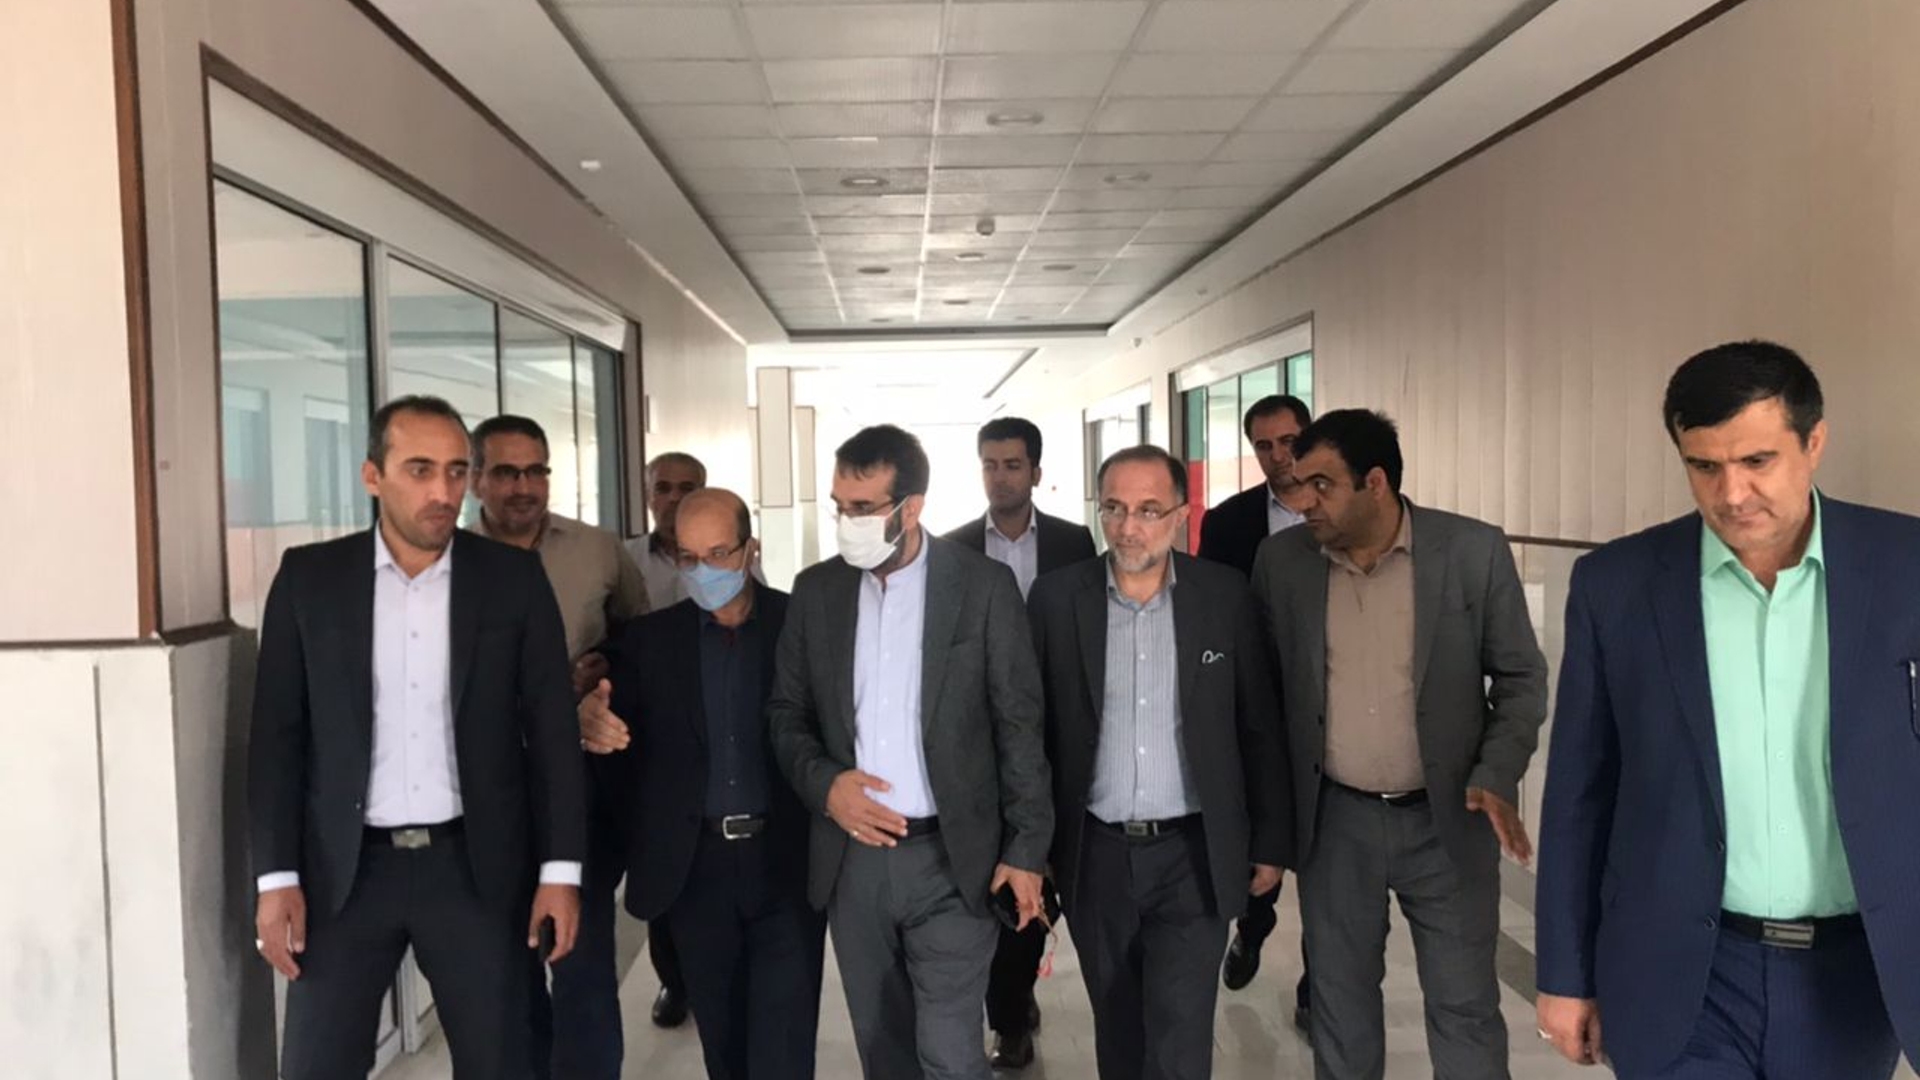 پیرو جلسه کمیته پشتیبانی ستاد سفر استانی ریاست محترم جمهوری که امروز برگزار شد بازدید از سالن دانشگاه آزاد اسلامی اراک صورت گرفت.